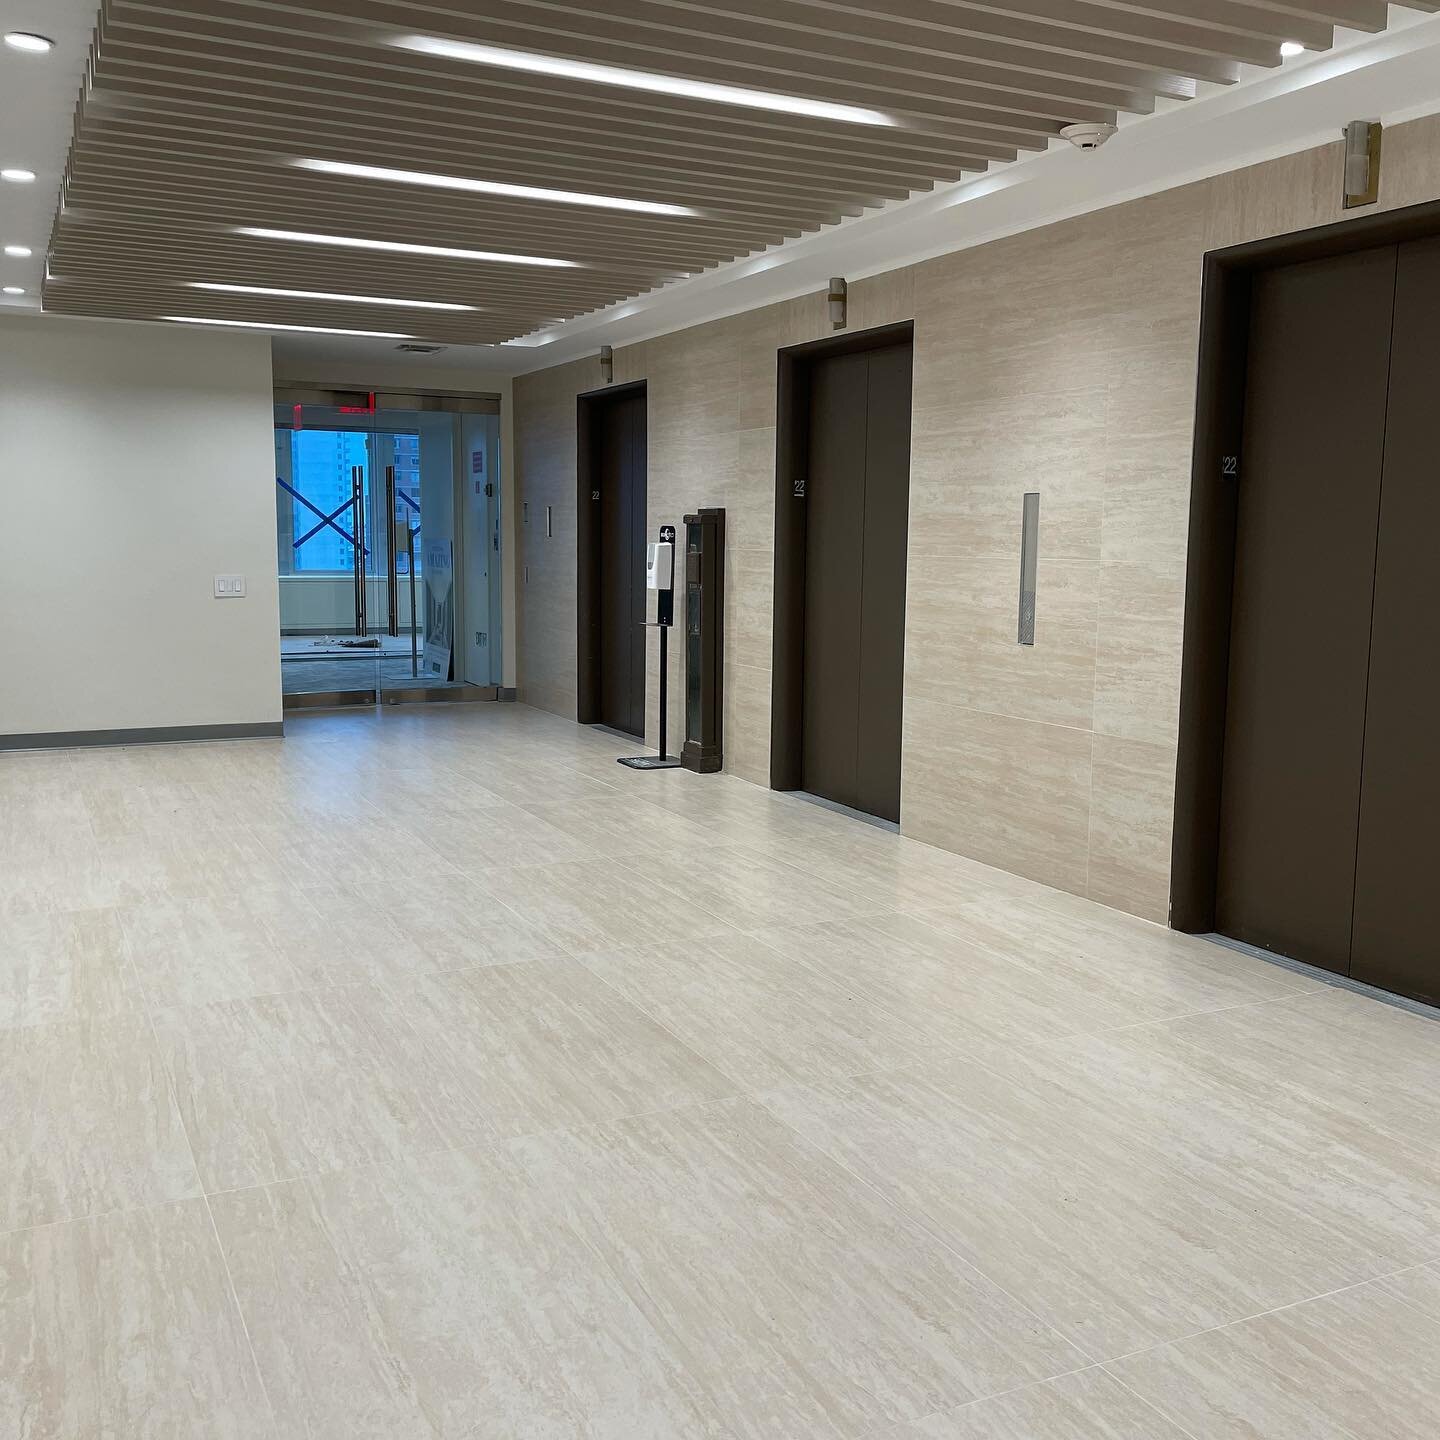 Office lobby renovation✅ #tile #tilework #tiledesign #tileinstallation #tiledecor #renovation #remodel #remodeling #construction #lobbydesign #lobby #officedesign #techcrew #techcrewnyc #tc #lobbyrenovation #largeformattiles